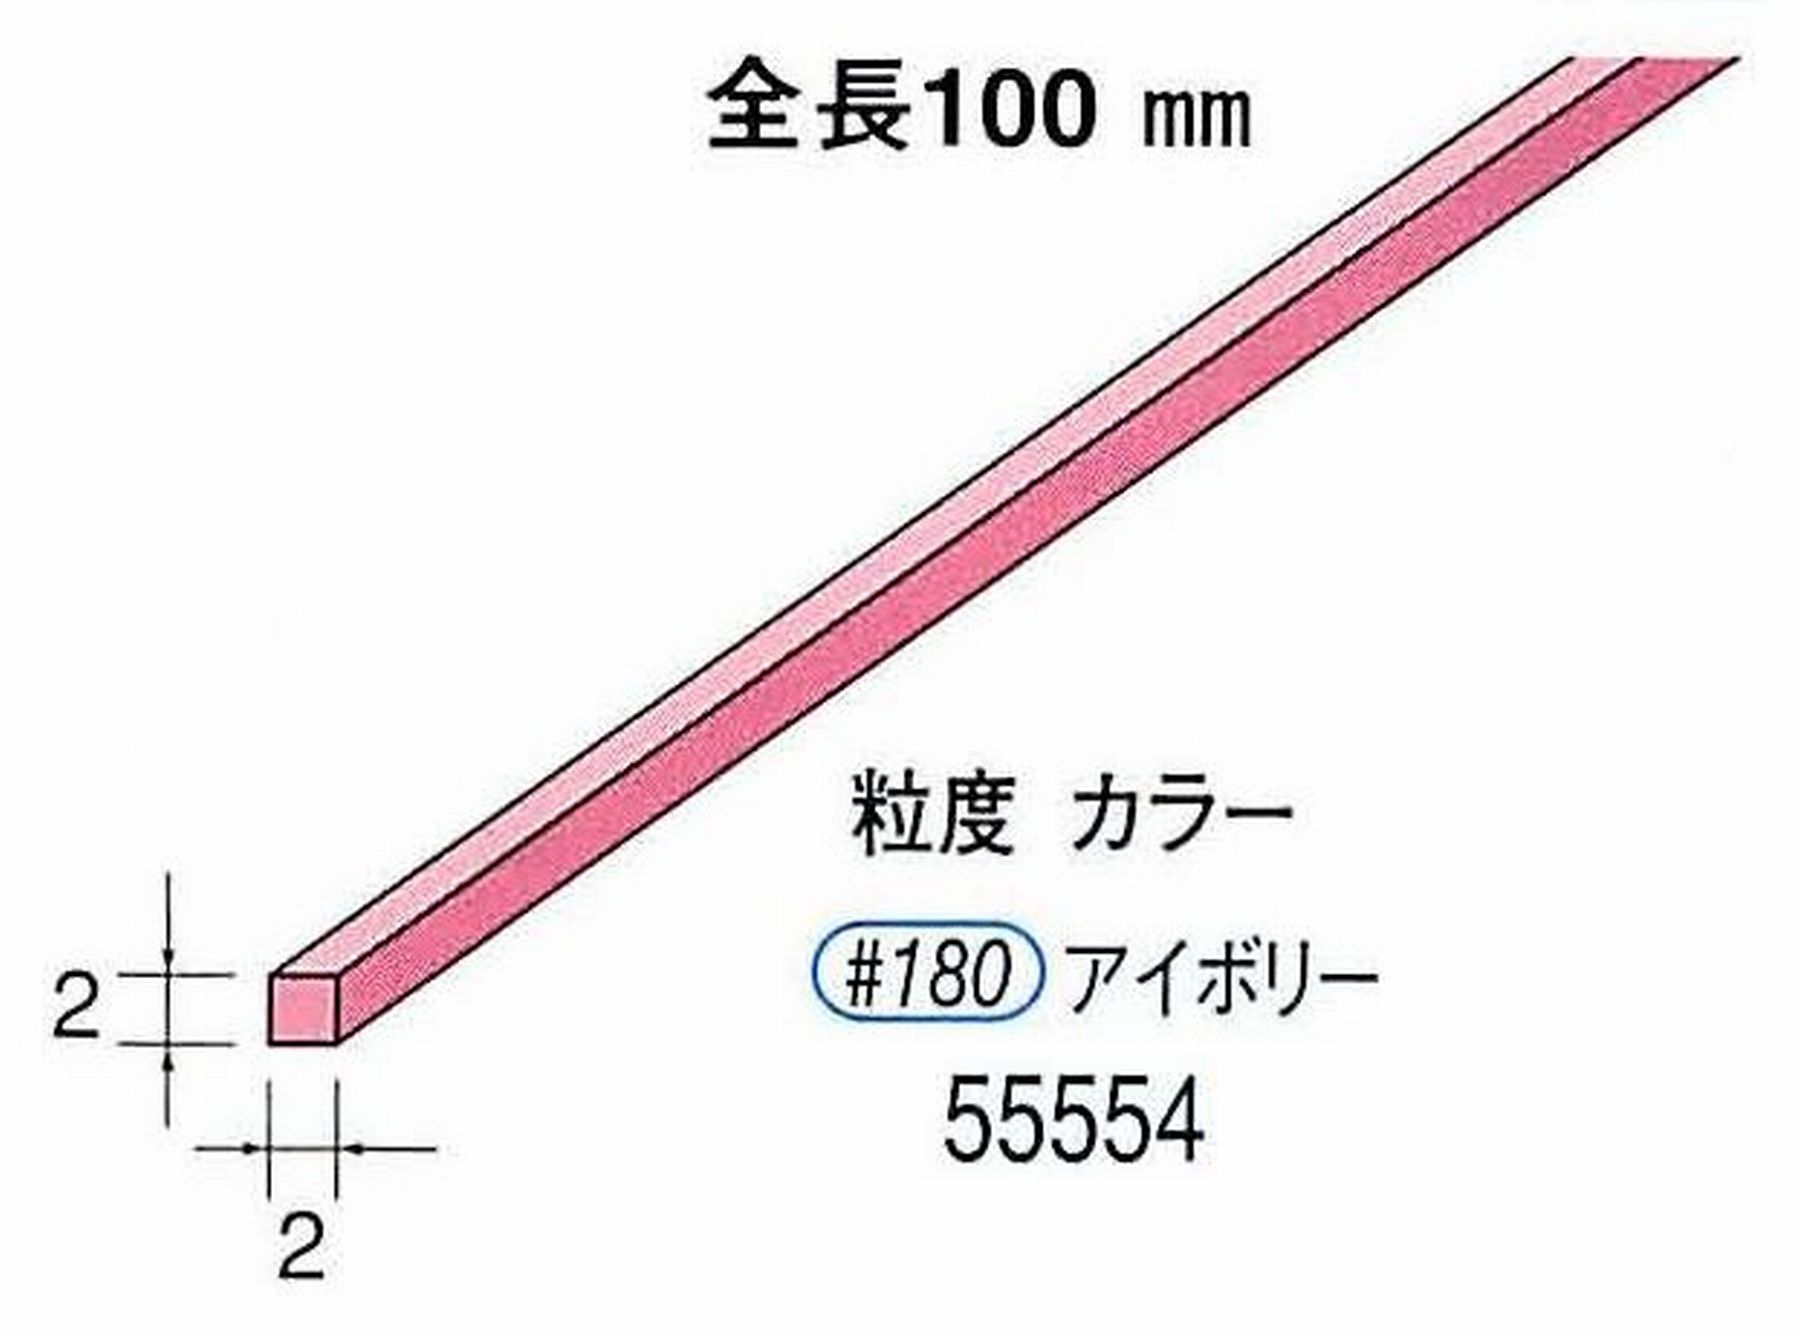 ナカニシ/NAKANISHI セラファイバー砥石 全長100mm アイボリー 55554